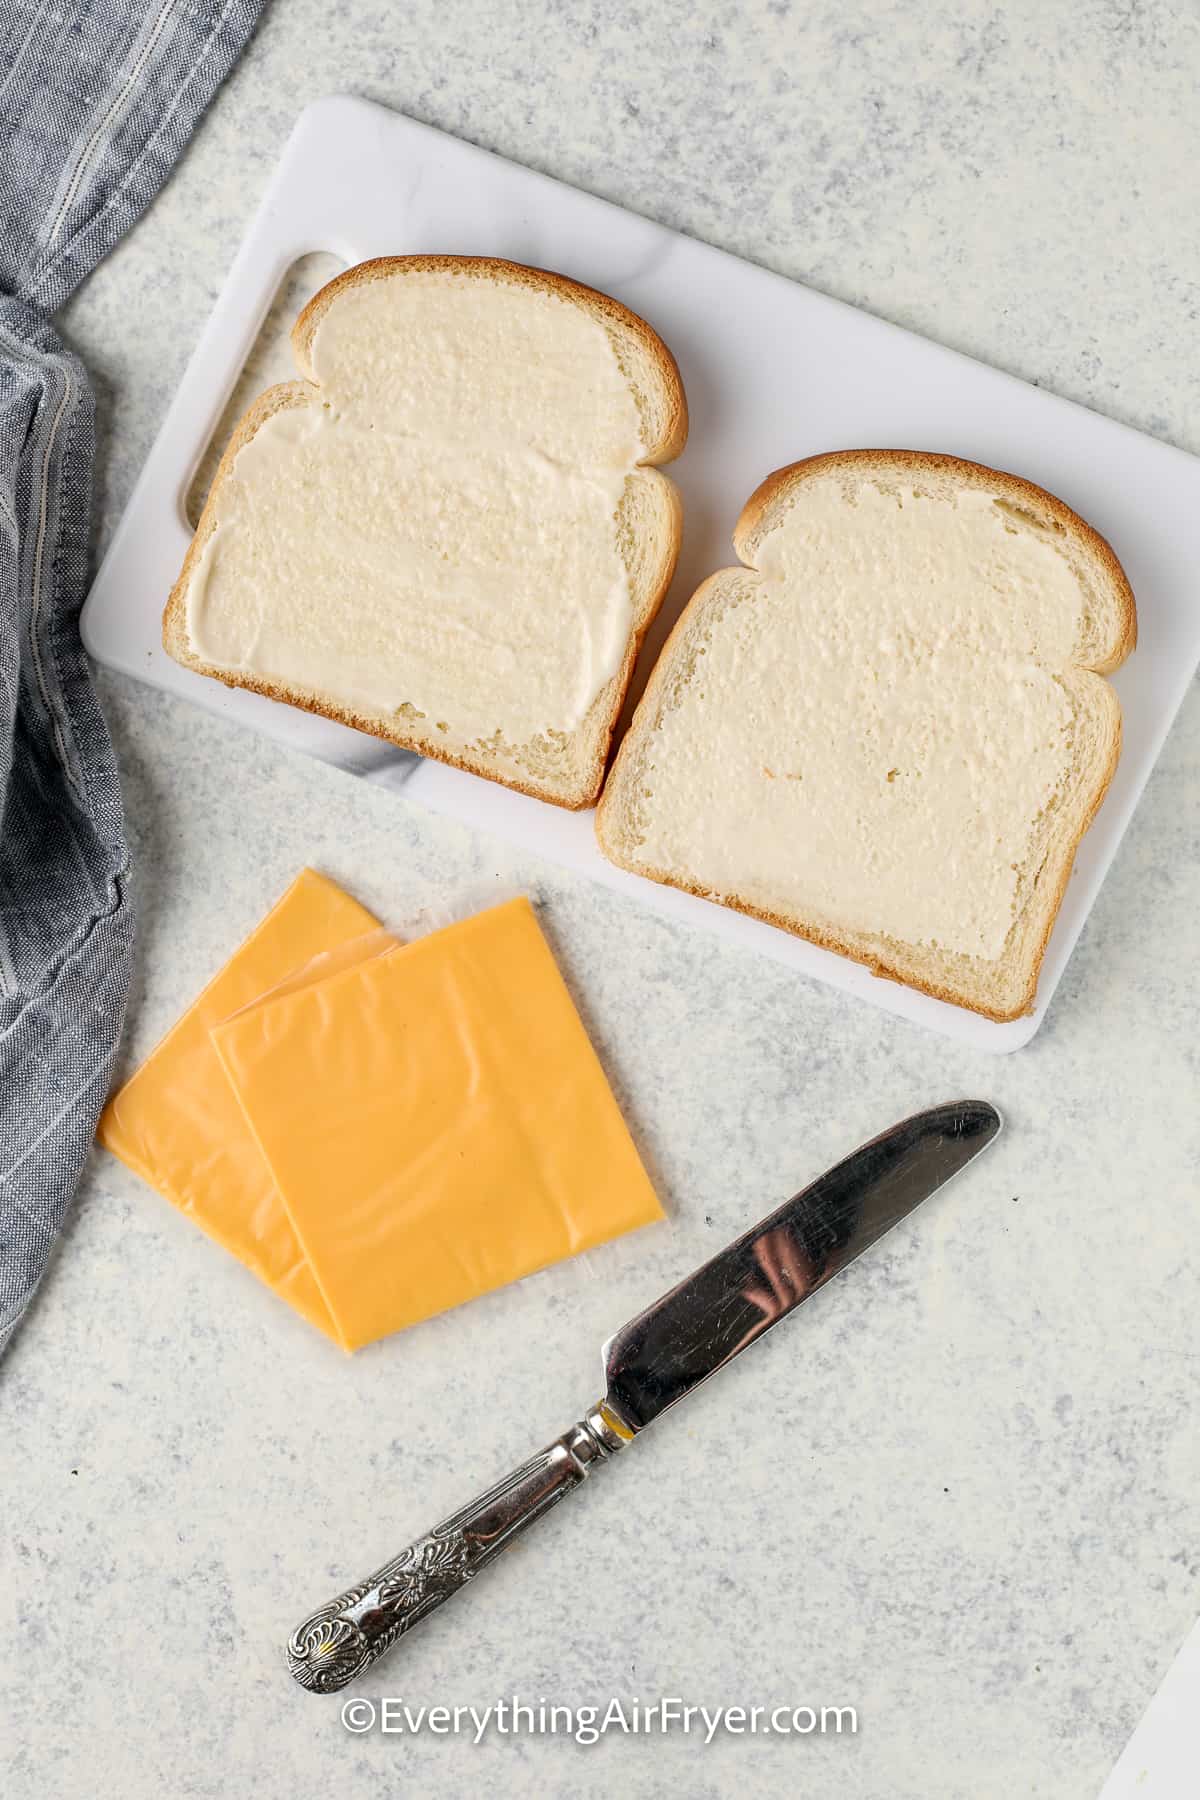 mayonnaise spread onto bread